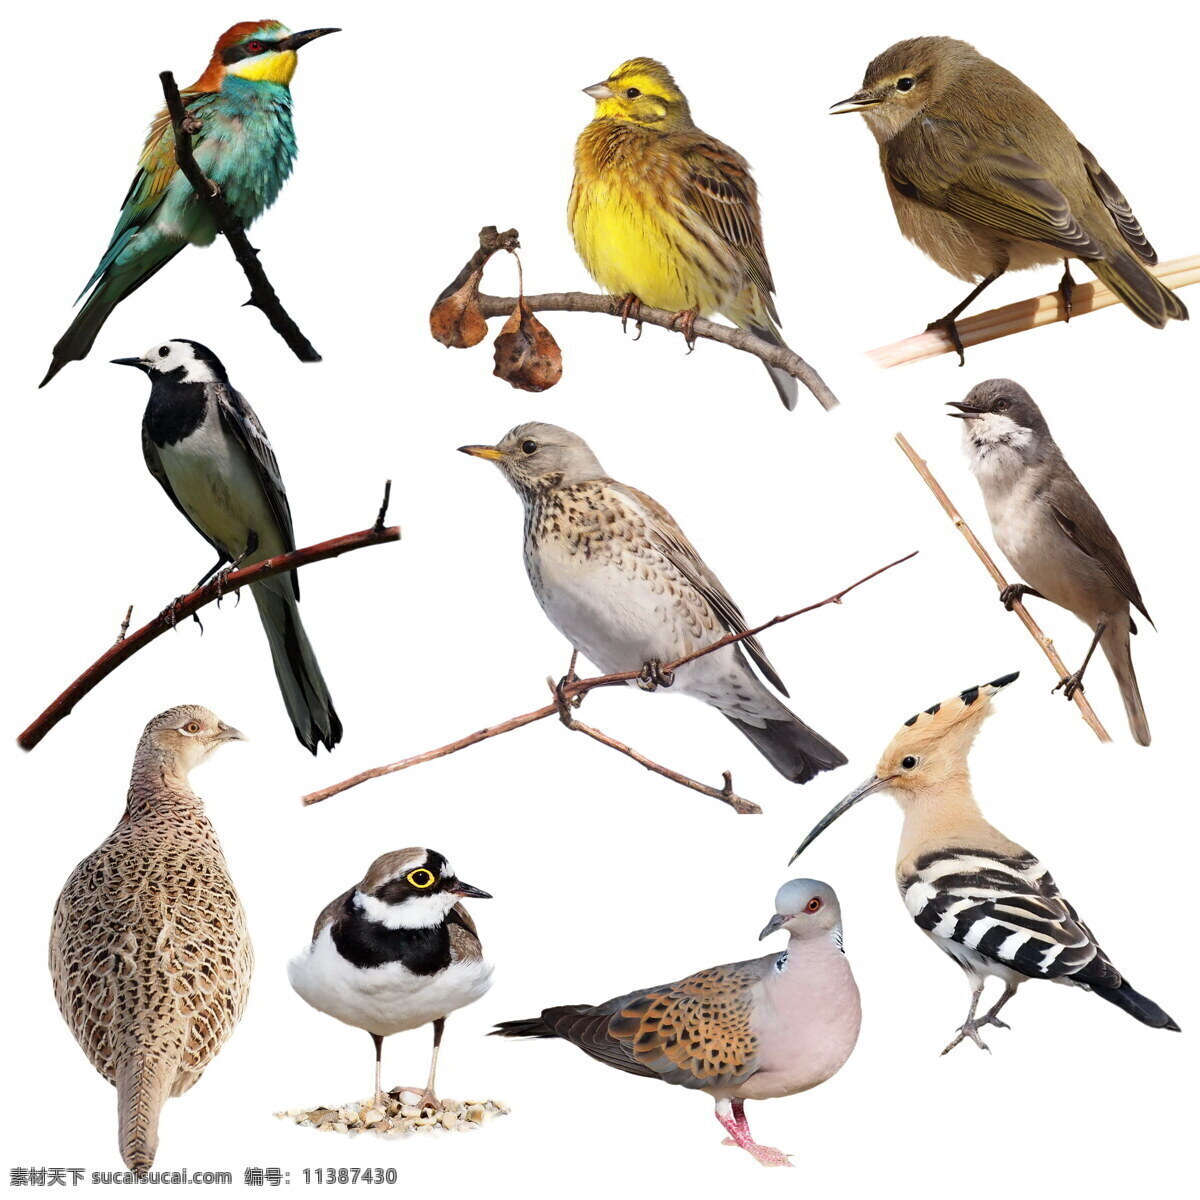 小鸟 飞禽 鸟类动物 动物摄影 动物世界 空中飞鸟 生物世界